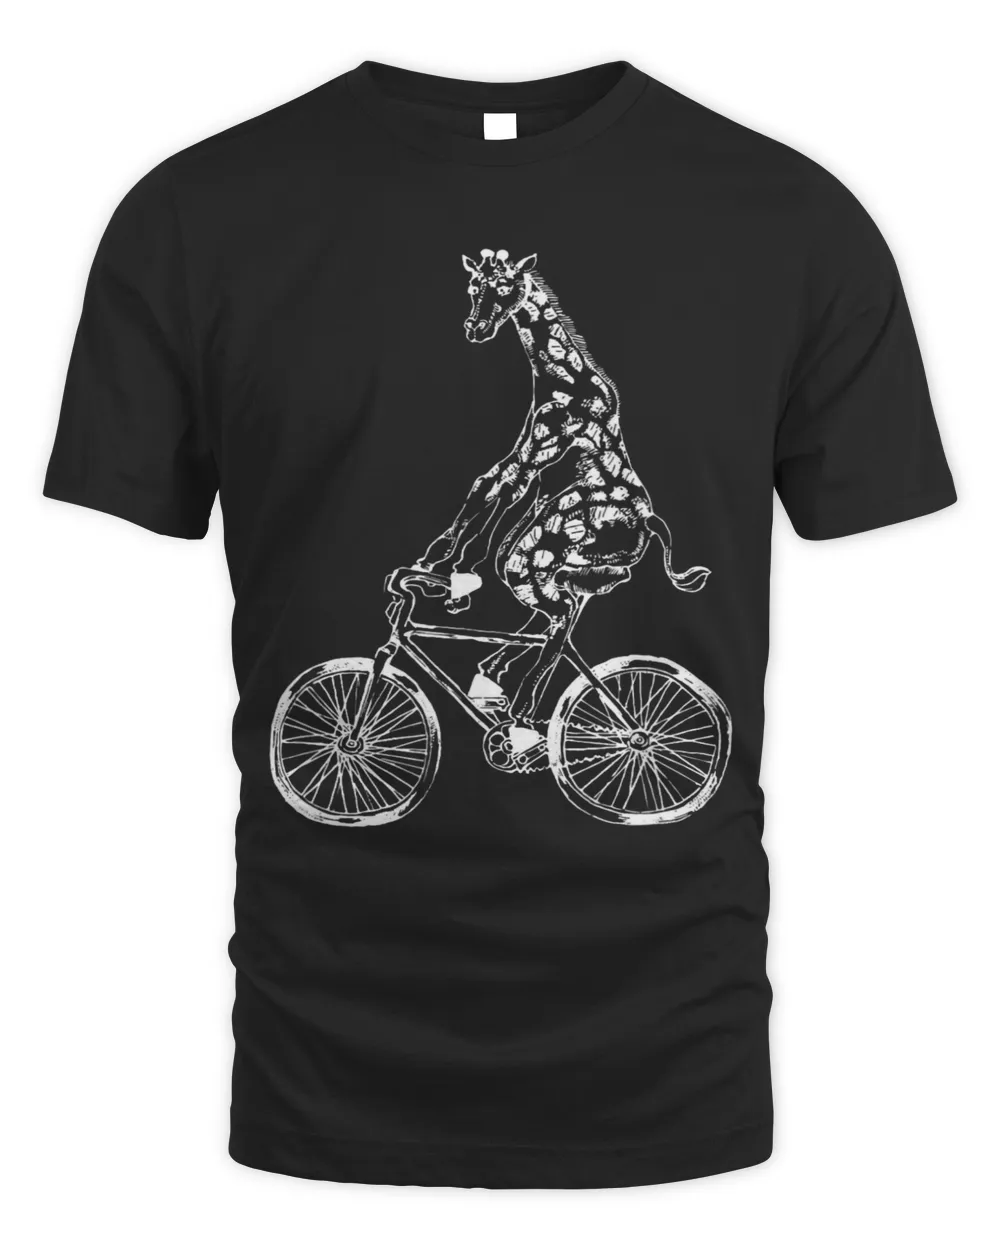 SEEMBO Giraffe Cycling Bicycle Bicycling Biker Biking Bike